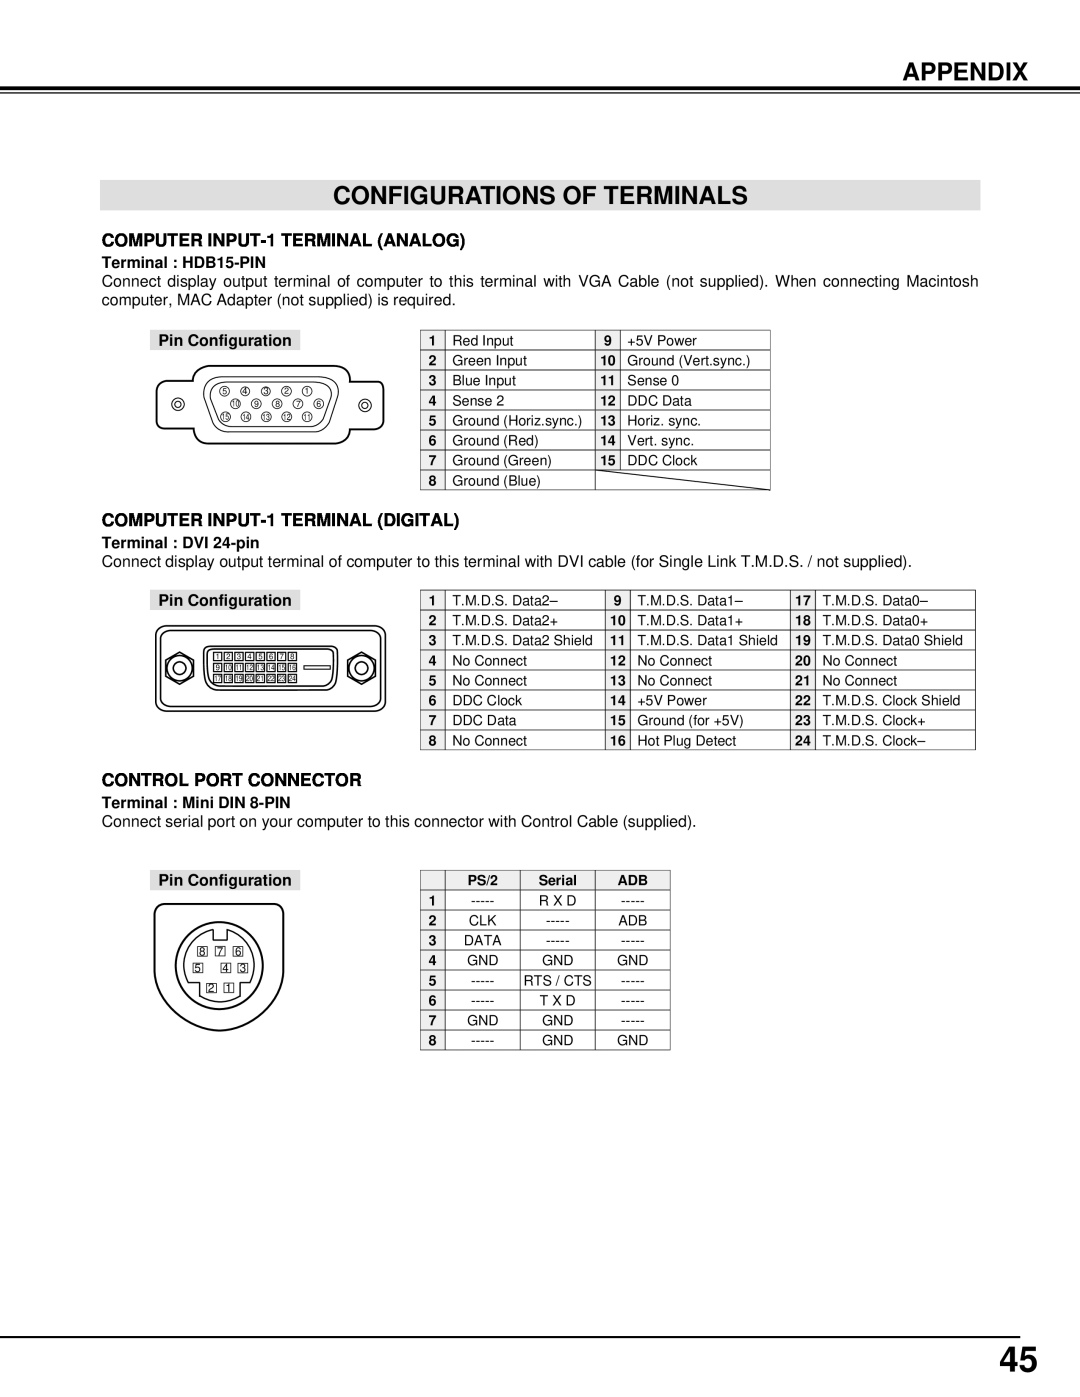 BOXLIGHT CINEMA 20HD Appendix Configurations Of Terminals, Terminal HDB15-PIN, Pin Configuration, Terminal DVI 24-pin 